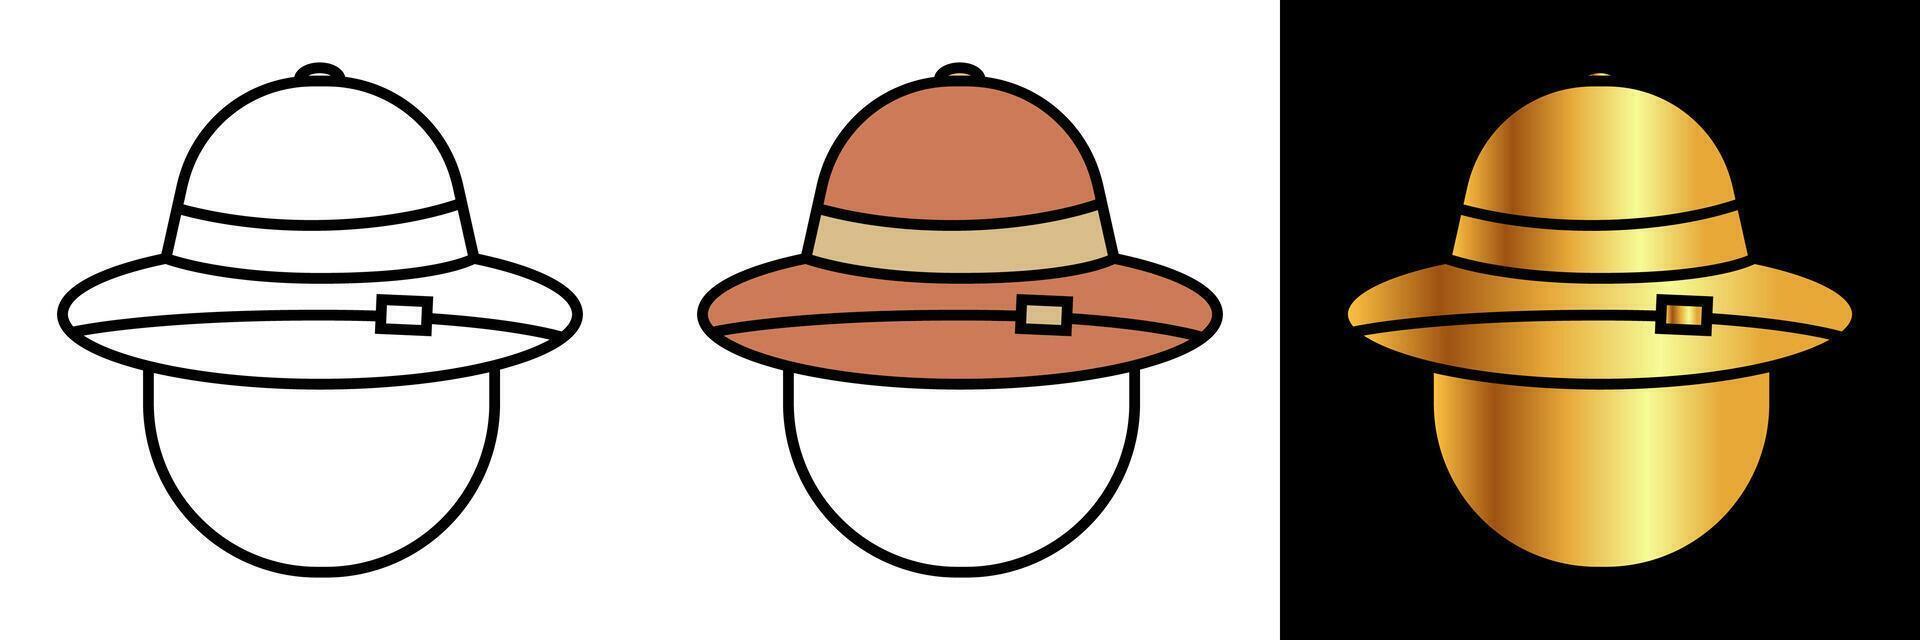 safari sombrero icono, un icono representando un safari sombrero, simbolizando aventura, exploración, y proteccion en el desierto. vector